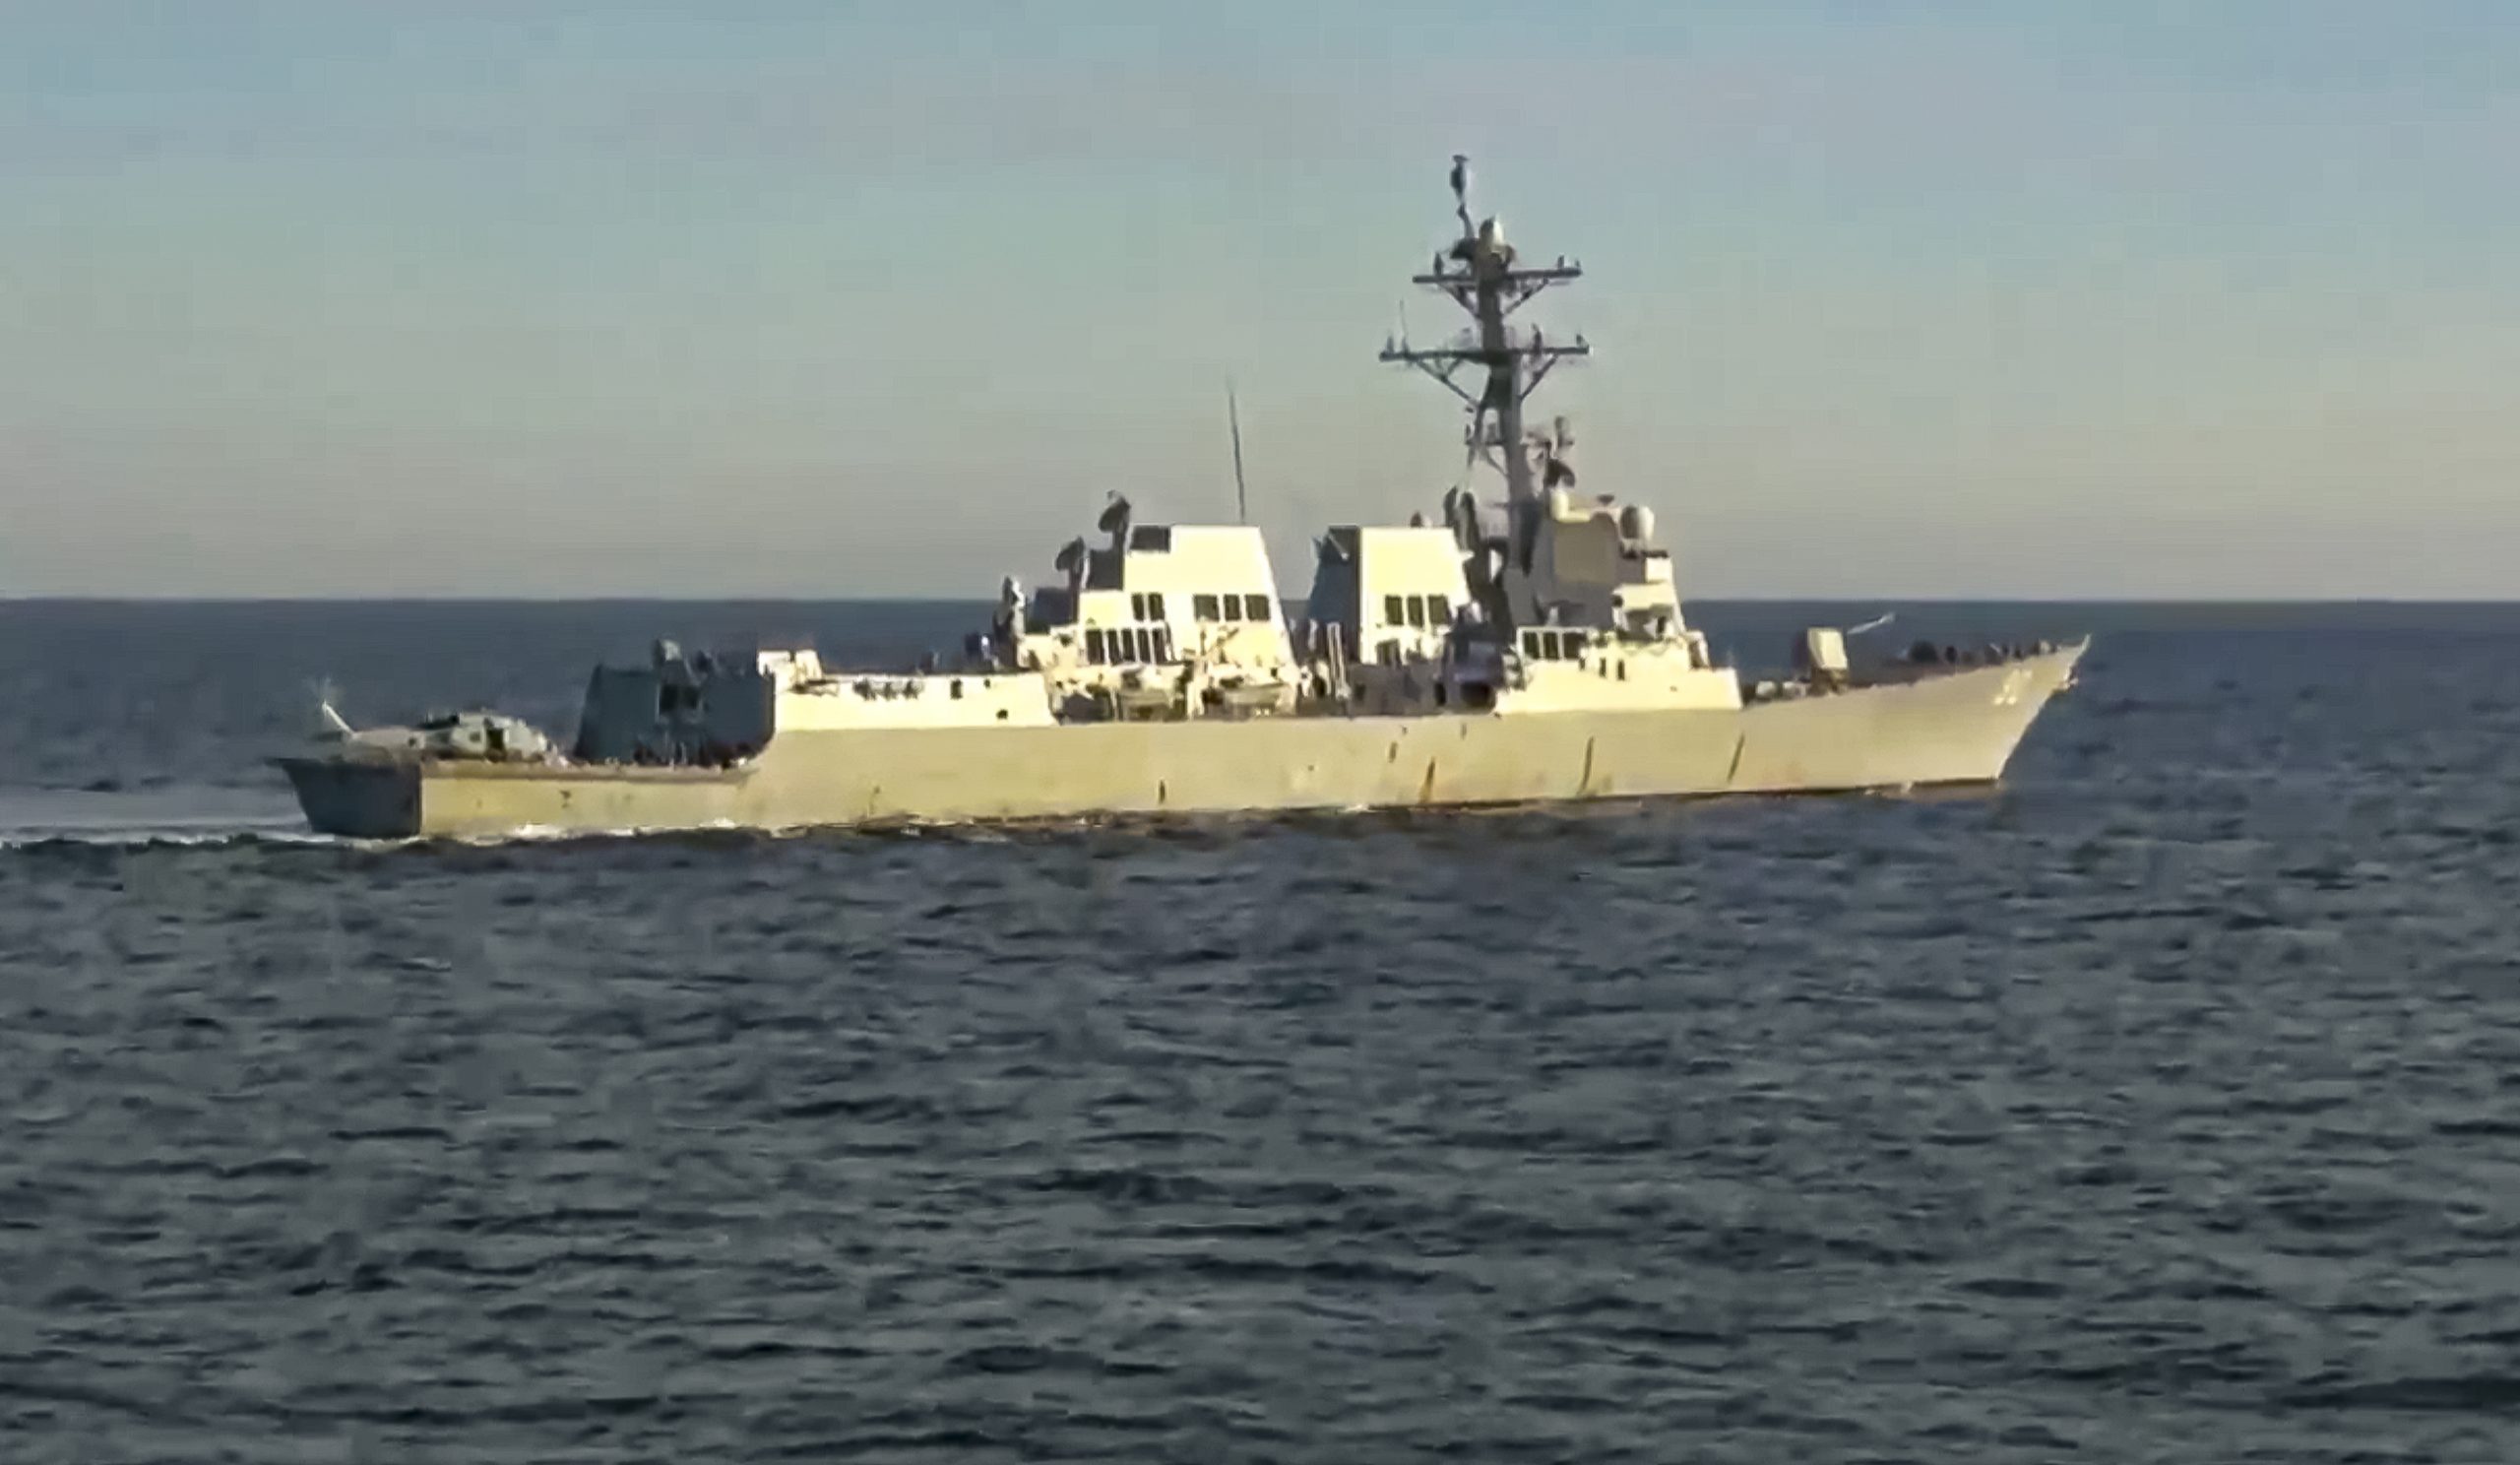 俄罗斯称驱逐企图侵犯边界美国海军舰艇  华府否认